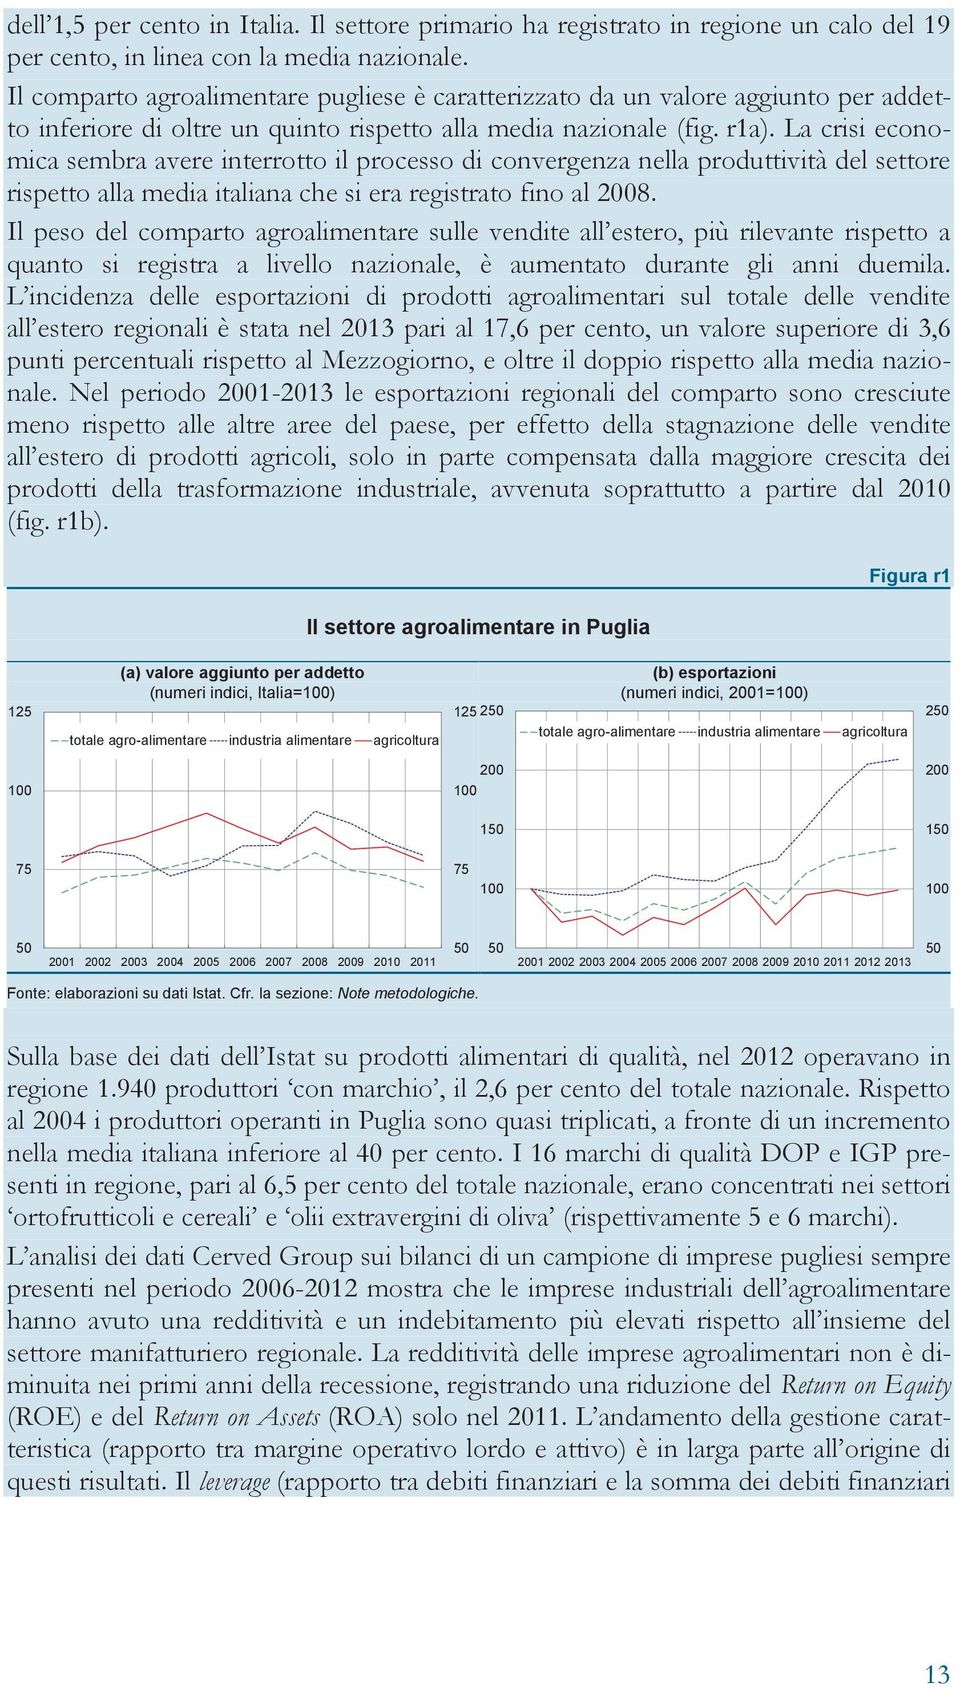 La crisi economica sembra avere interrotto il processo di convergenza nella produttività del settore rispetto alla media italiana che si era registrato fino al 2008.